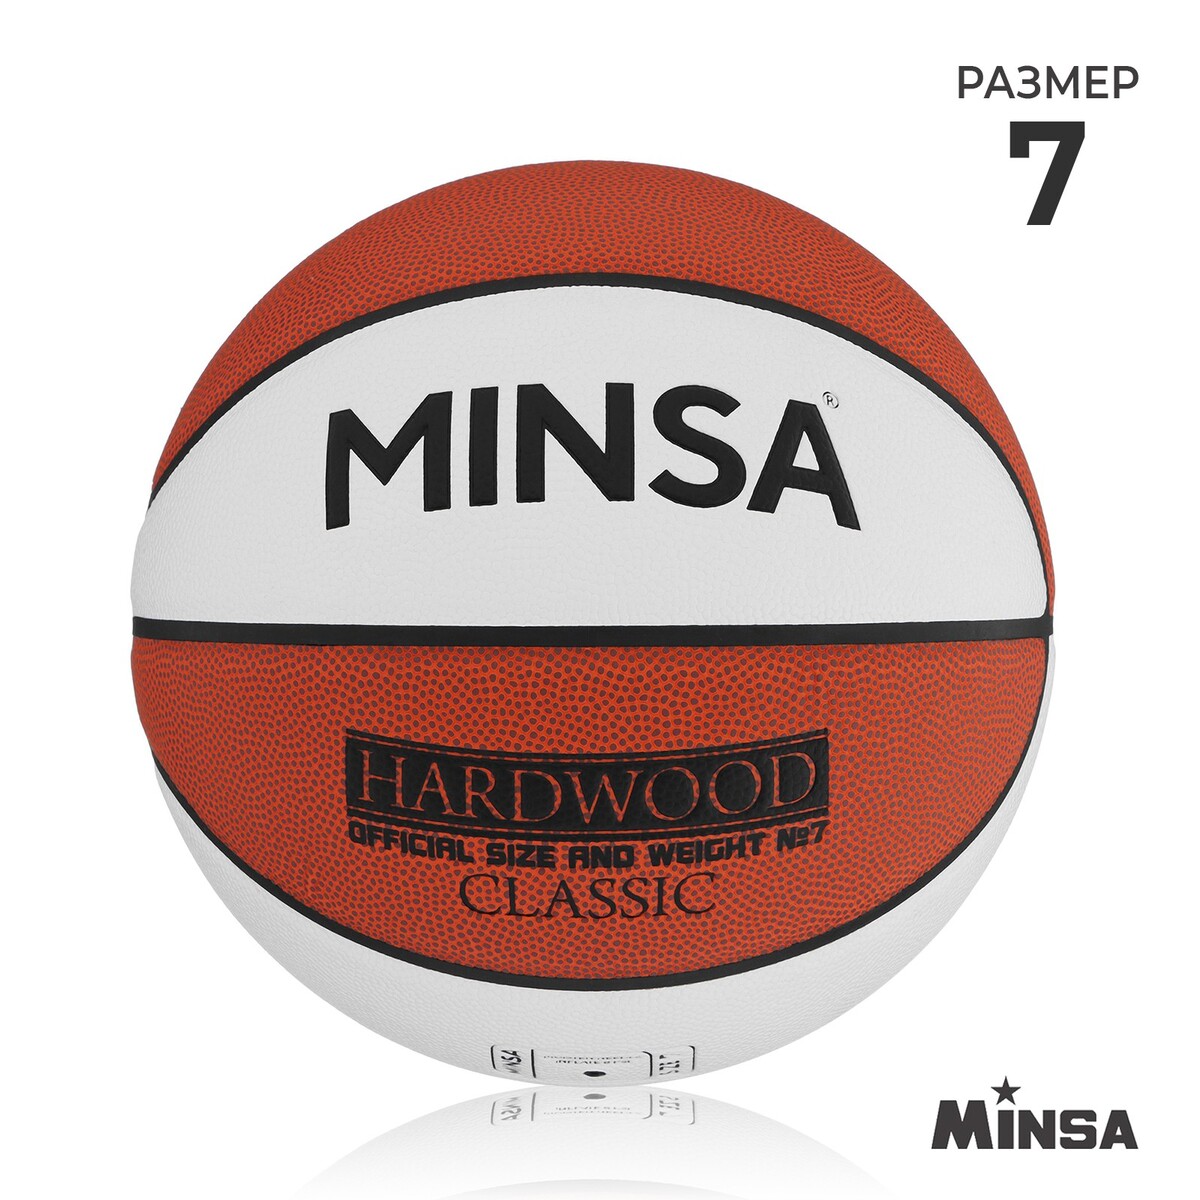 Баскетбольный мяч minsa hardwood classic, pu, клееный, 8 панелей, р. 7 баскетбольный мяч minsa матчевый microfiber pu клееный 8 панелей р 6